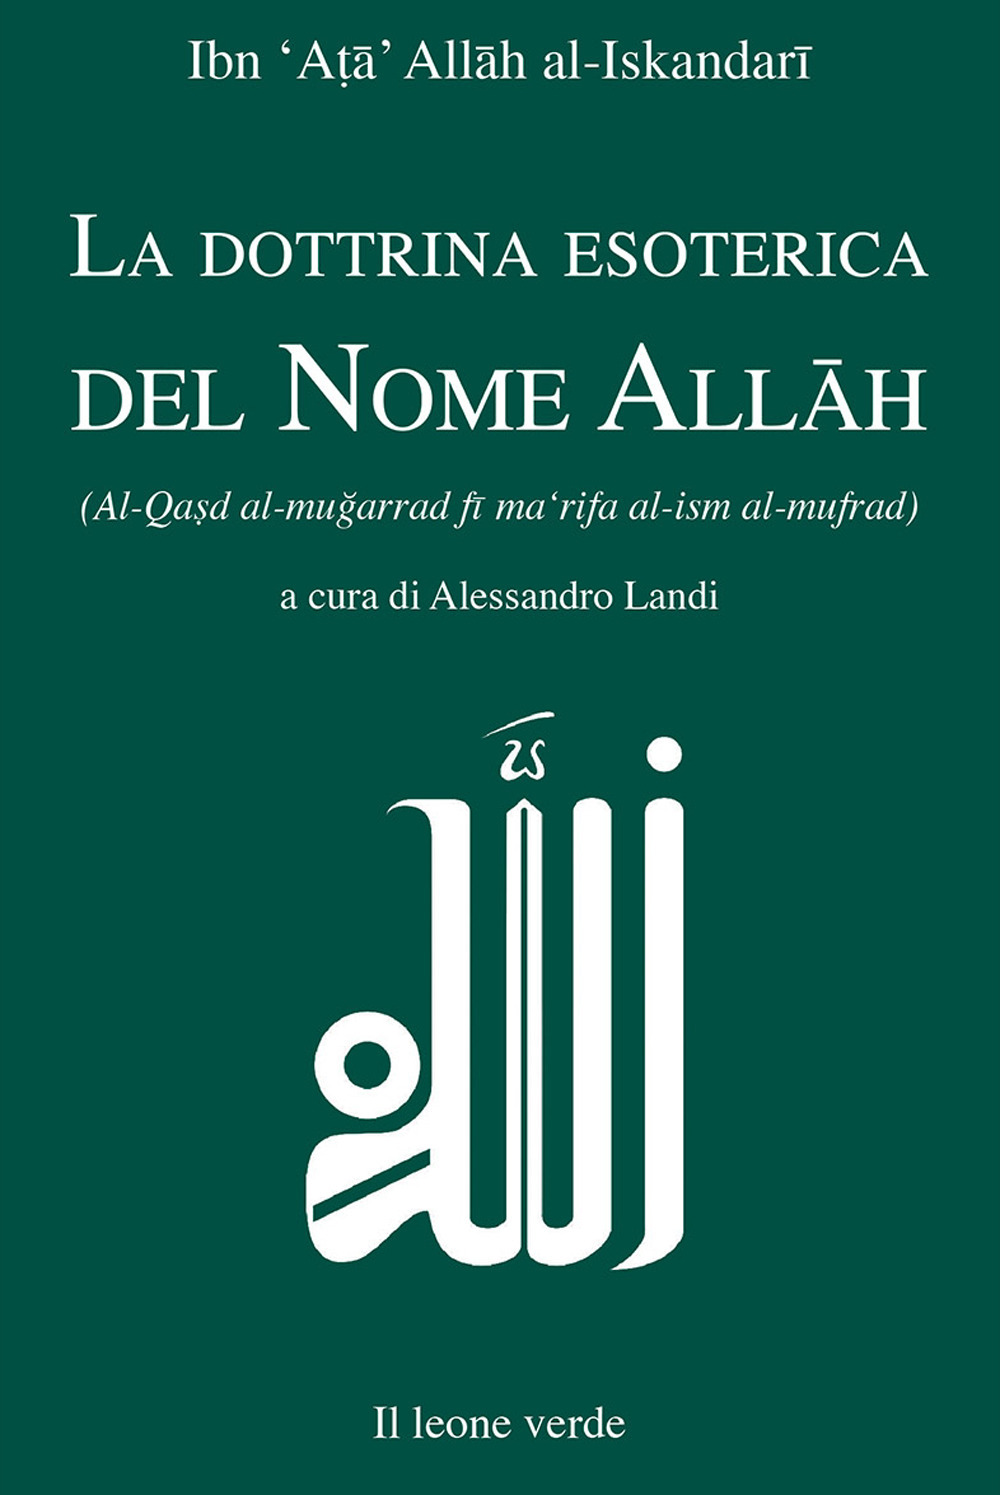 La dottrina esoterica del nome Allâh. Trattato sull'aspirazione spirituale verso il Principio dell'esistenza mediante il Nome divino Allâh